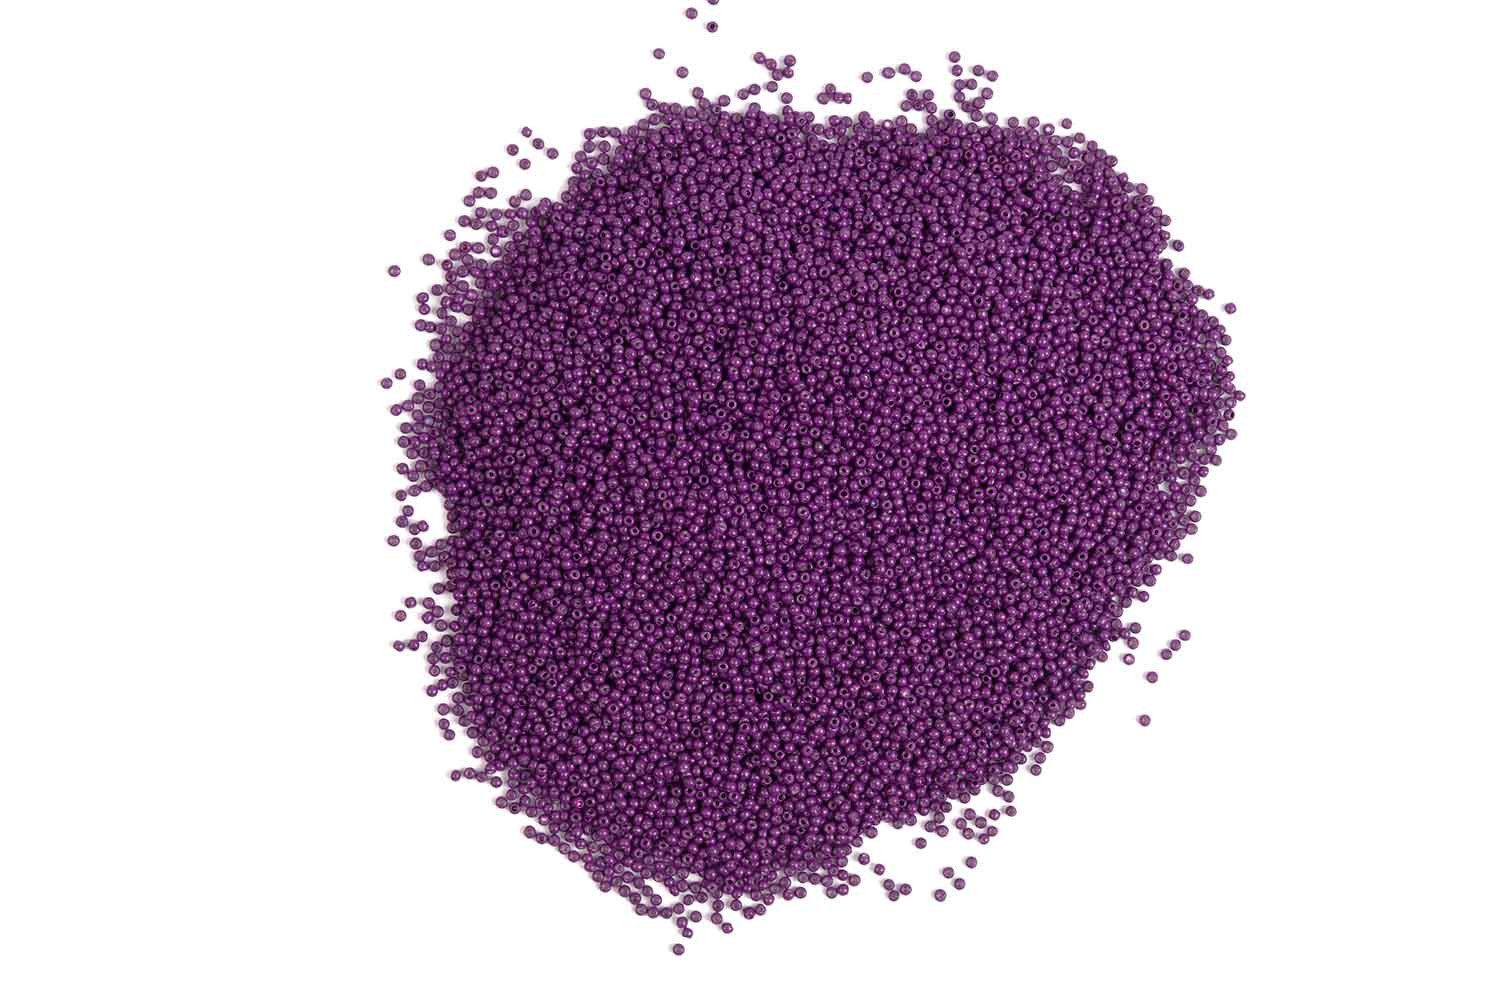 MRBD0007J) 2 MM Purple Color Round Shape Marble/Seed Beads (Jayco Moti) -  Designers Need